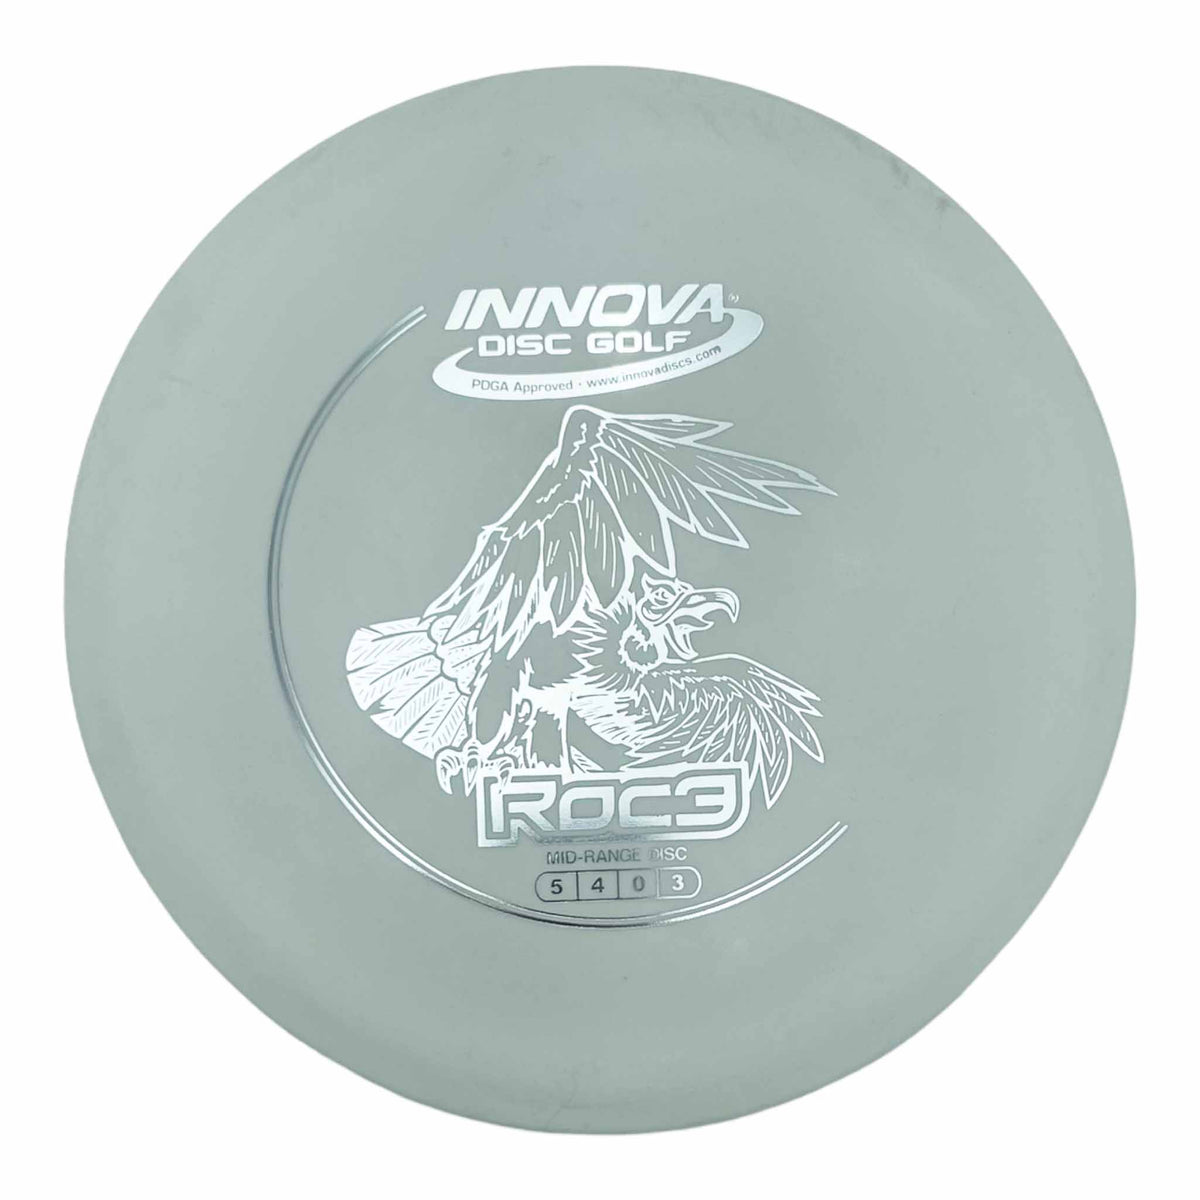 Innova Disc Golf DX Roc3 midrange - White